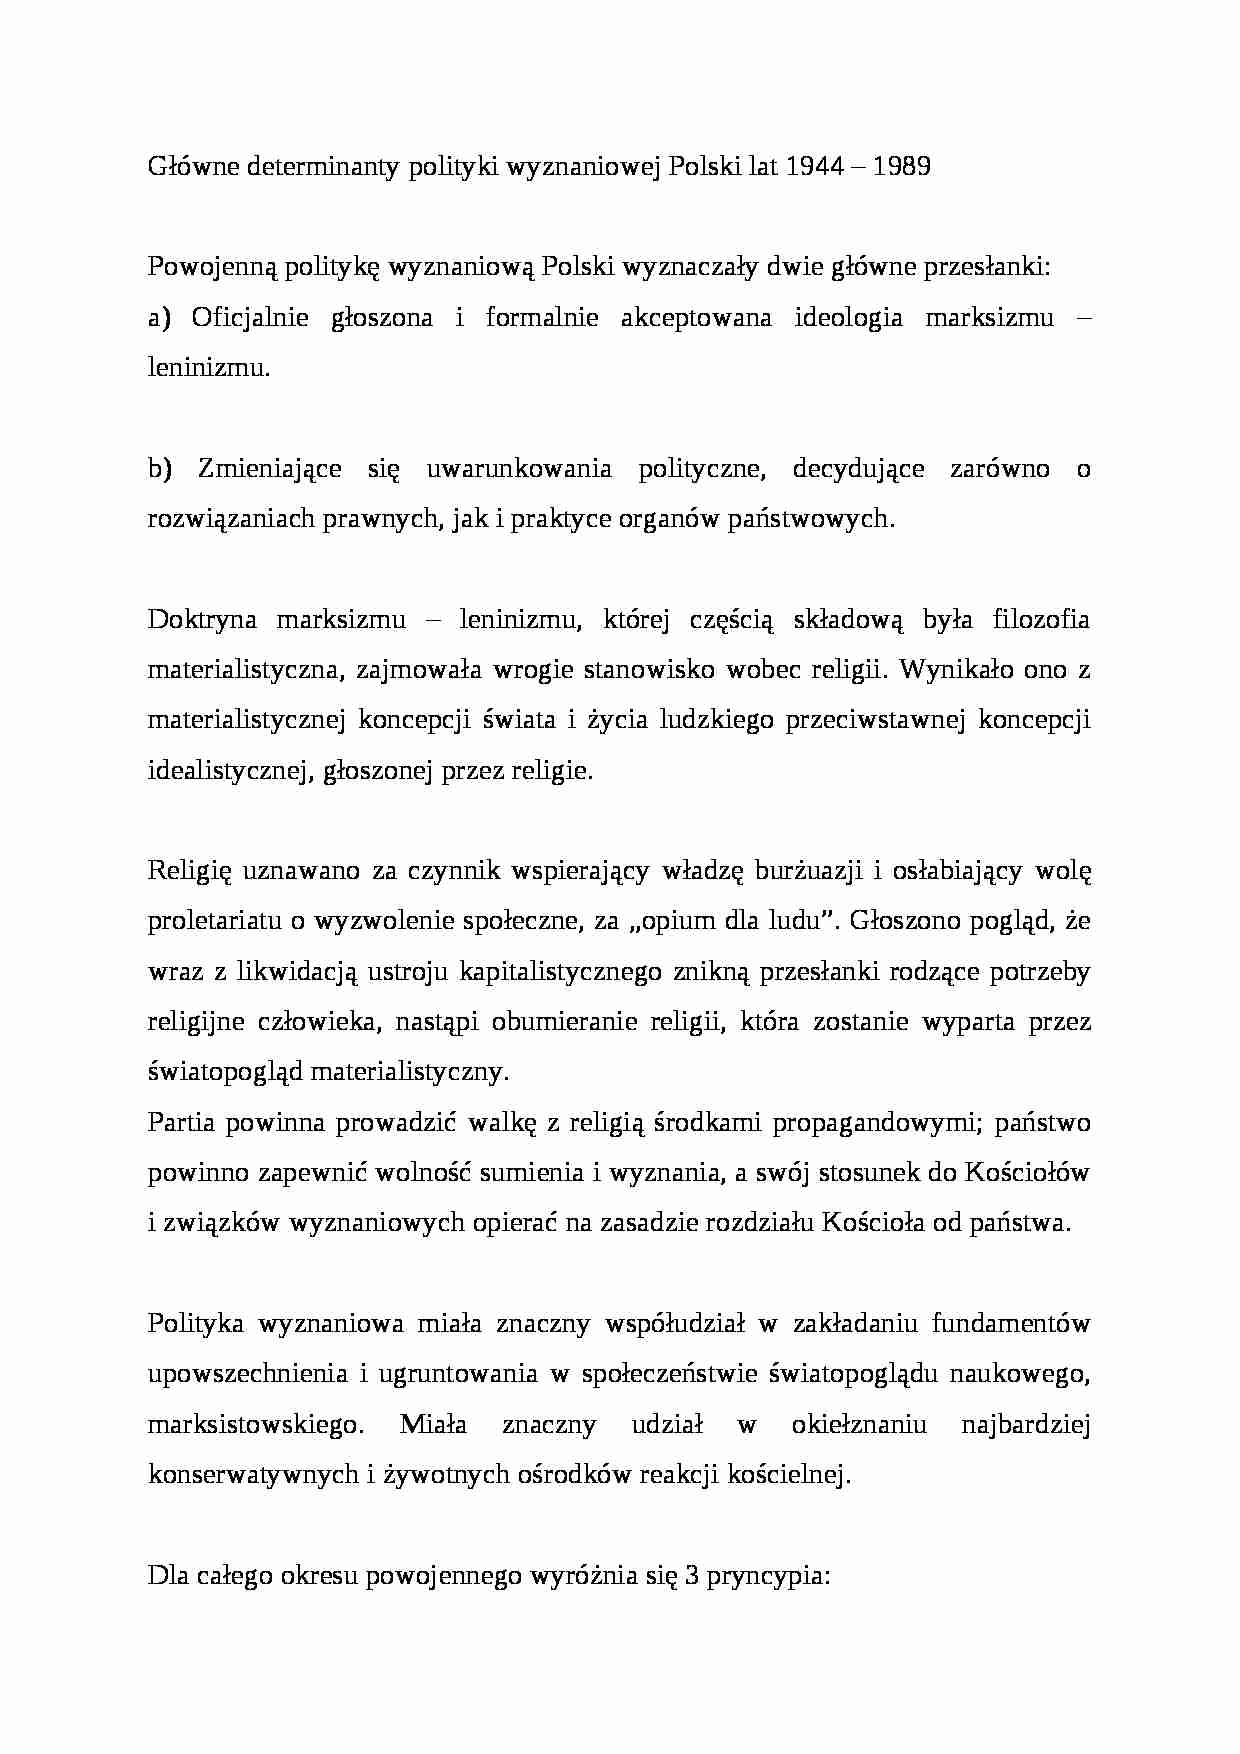 Główne determinanty polityki wyznaniowej Polski lat 1944-1989 - strona 1